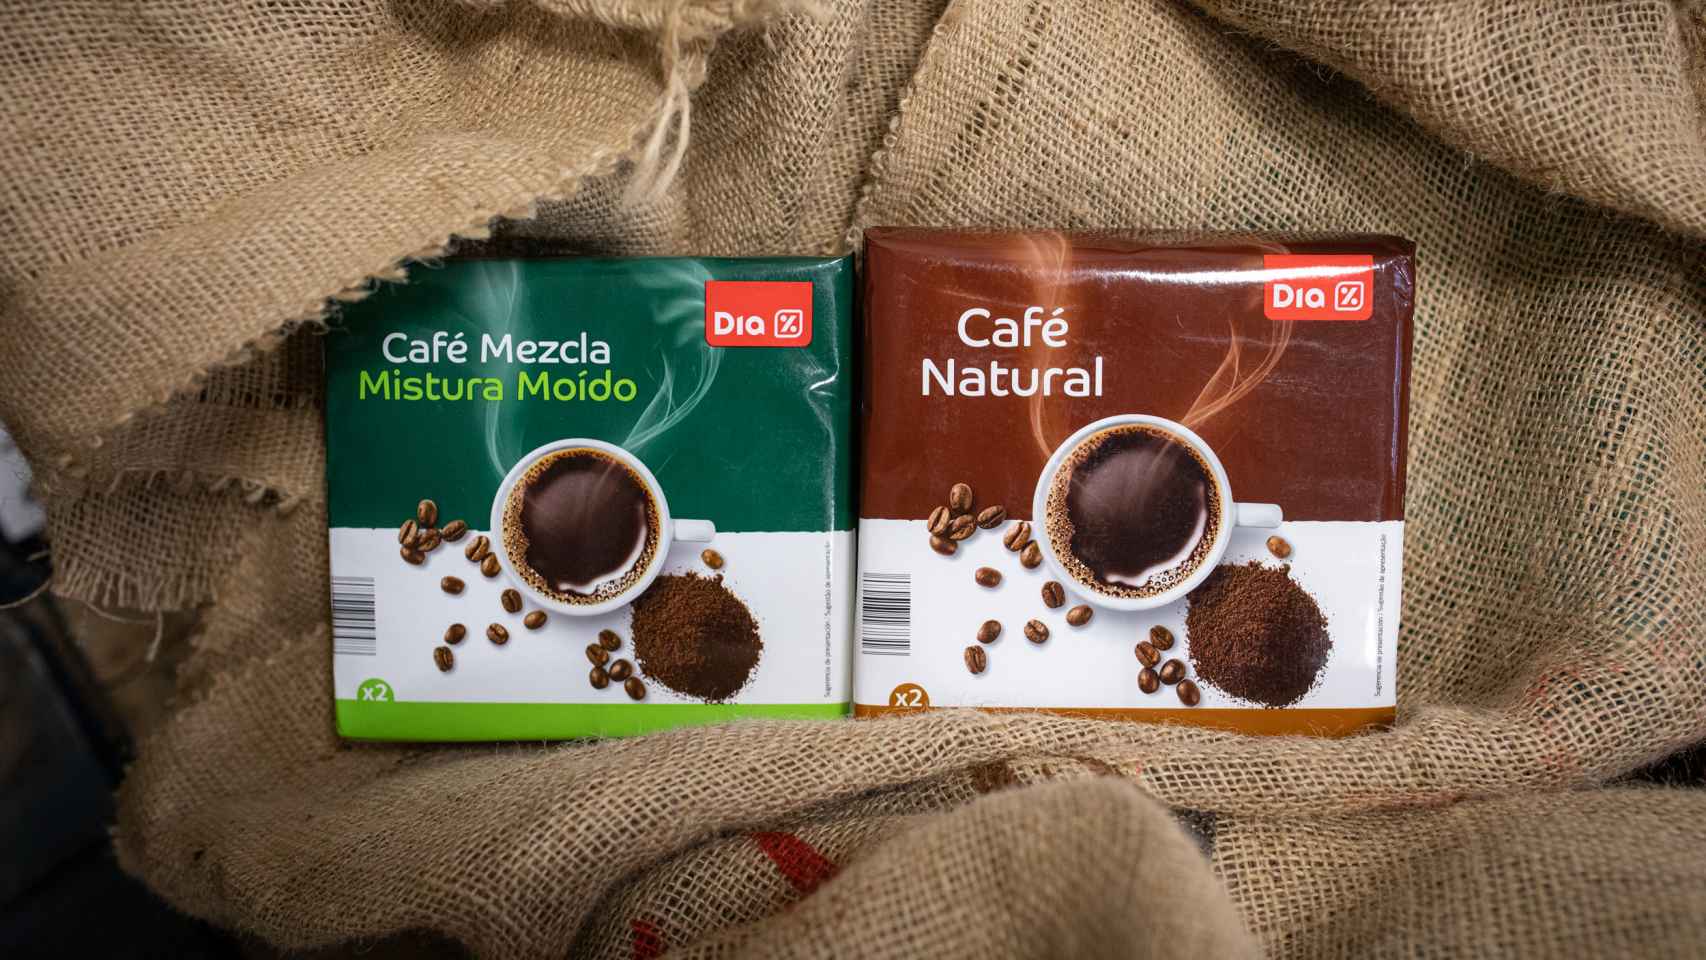  Nestlé Nescafe Dolce Gusto - Cápsulas de café descafeinado  sabor a leche - Elige cantidad (1 paquete (16 cápsulas)) : Todo lo demás